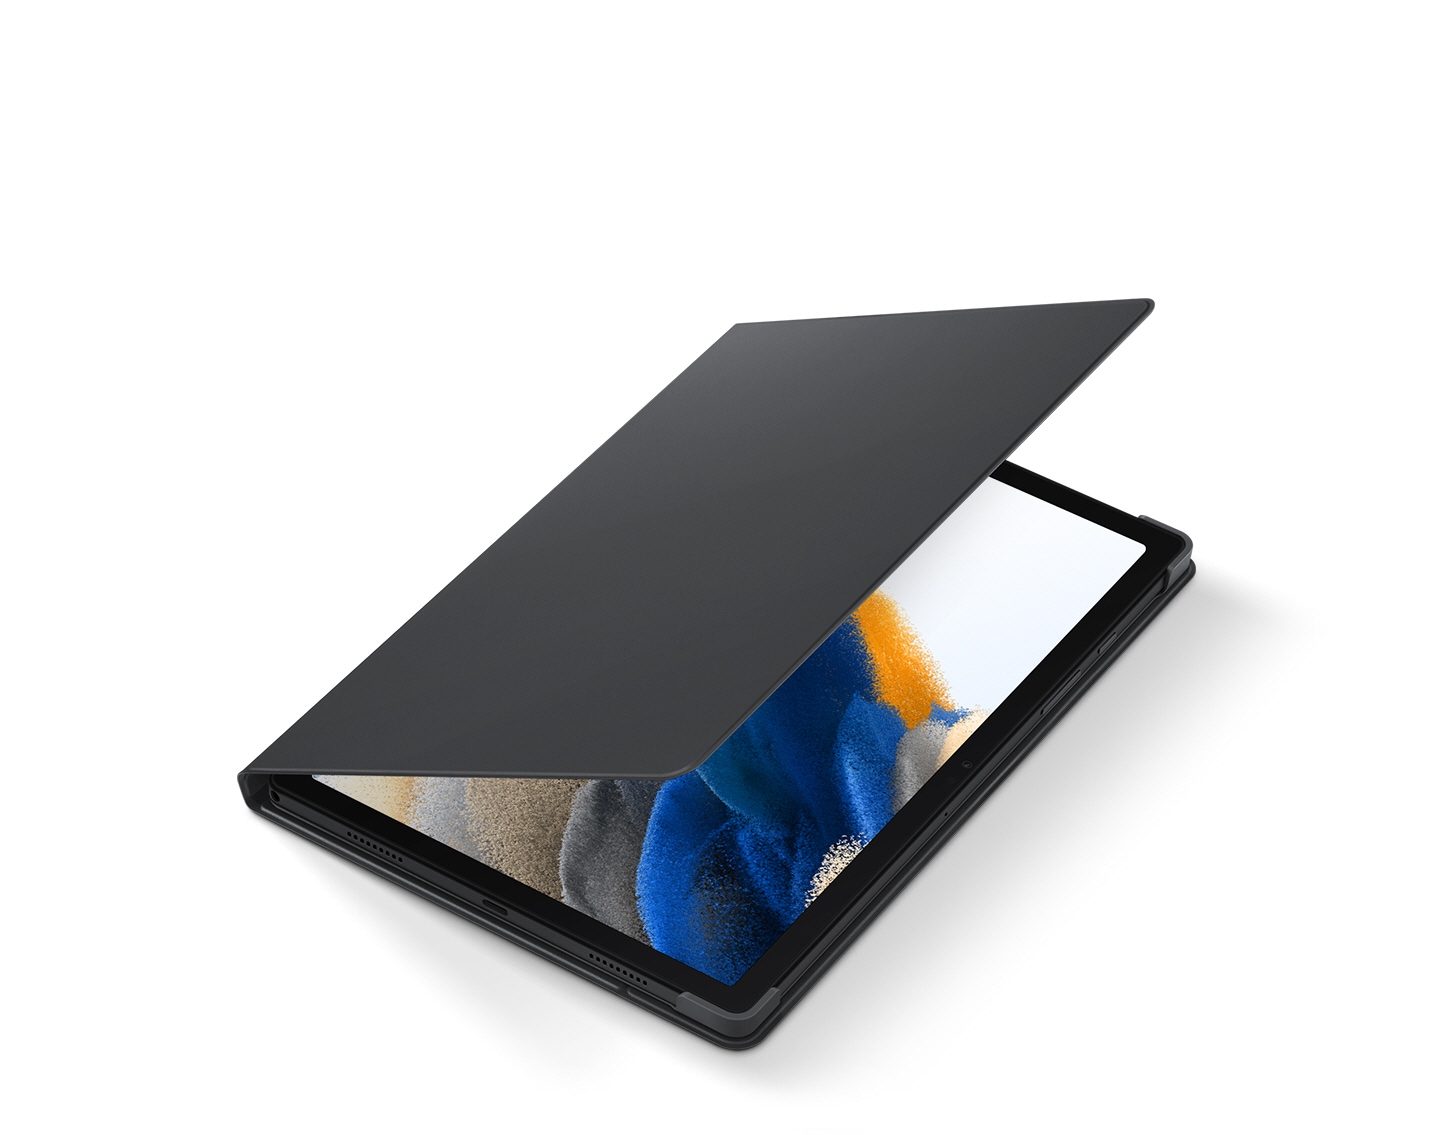  Galaxy Tab A8 Bookcover aperto a metà, che mostra sullo schermo del tablet.